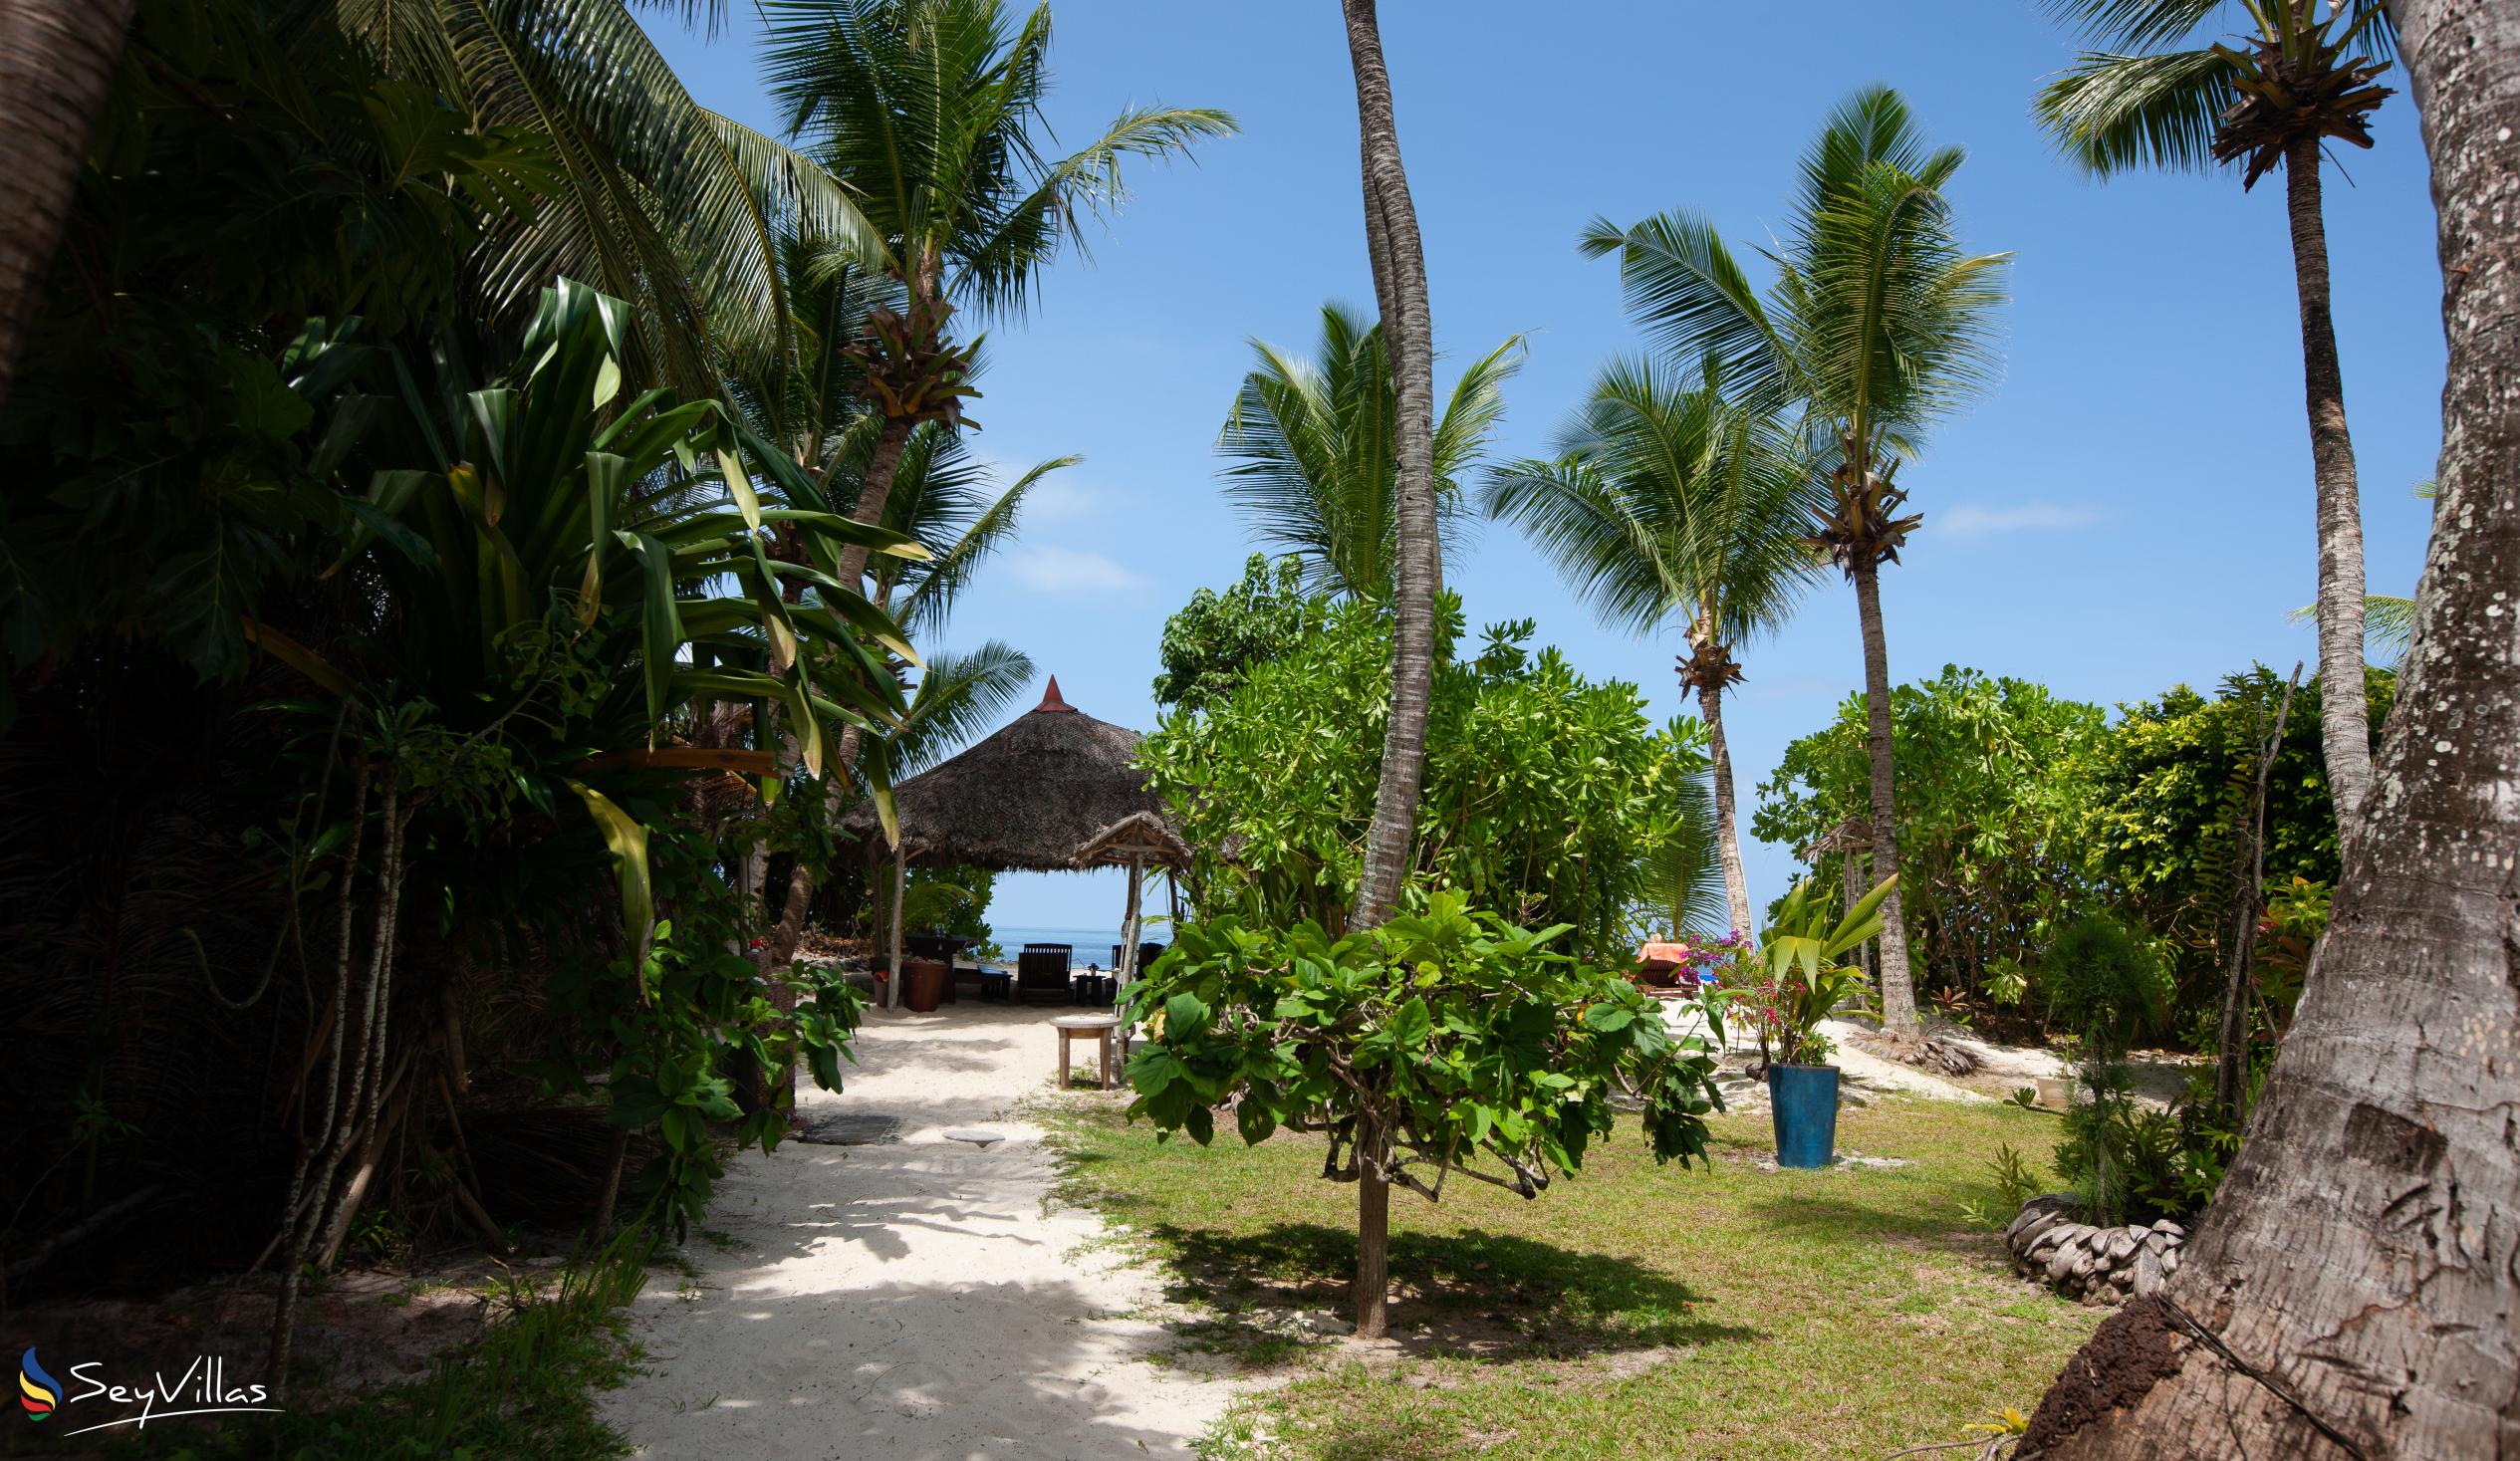 Foto 11: Villas du Voyageur - Aussenbereich - Praslin (Seychellen)